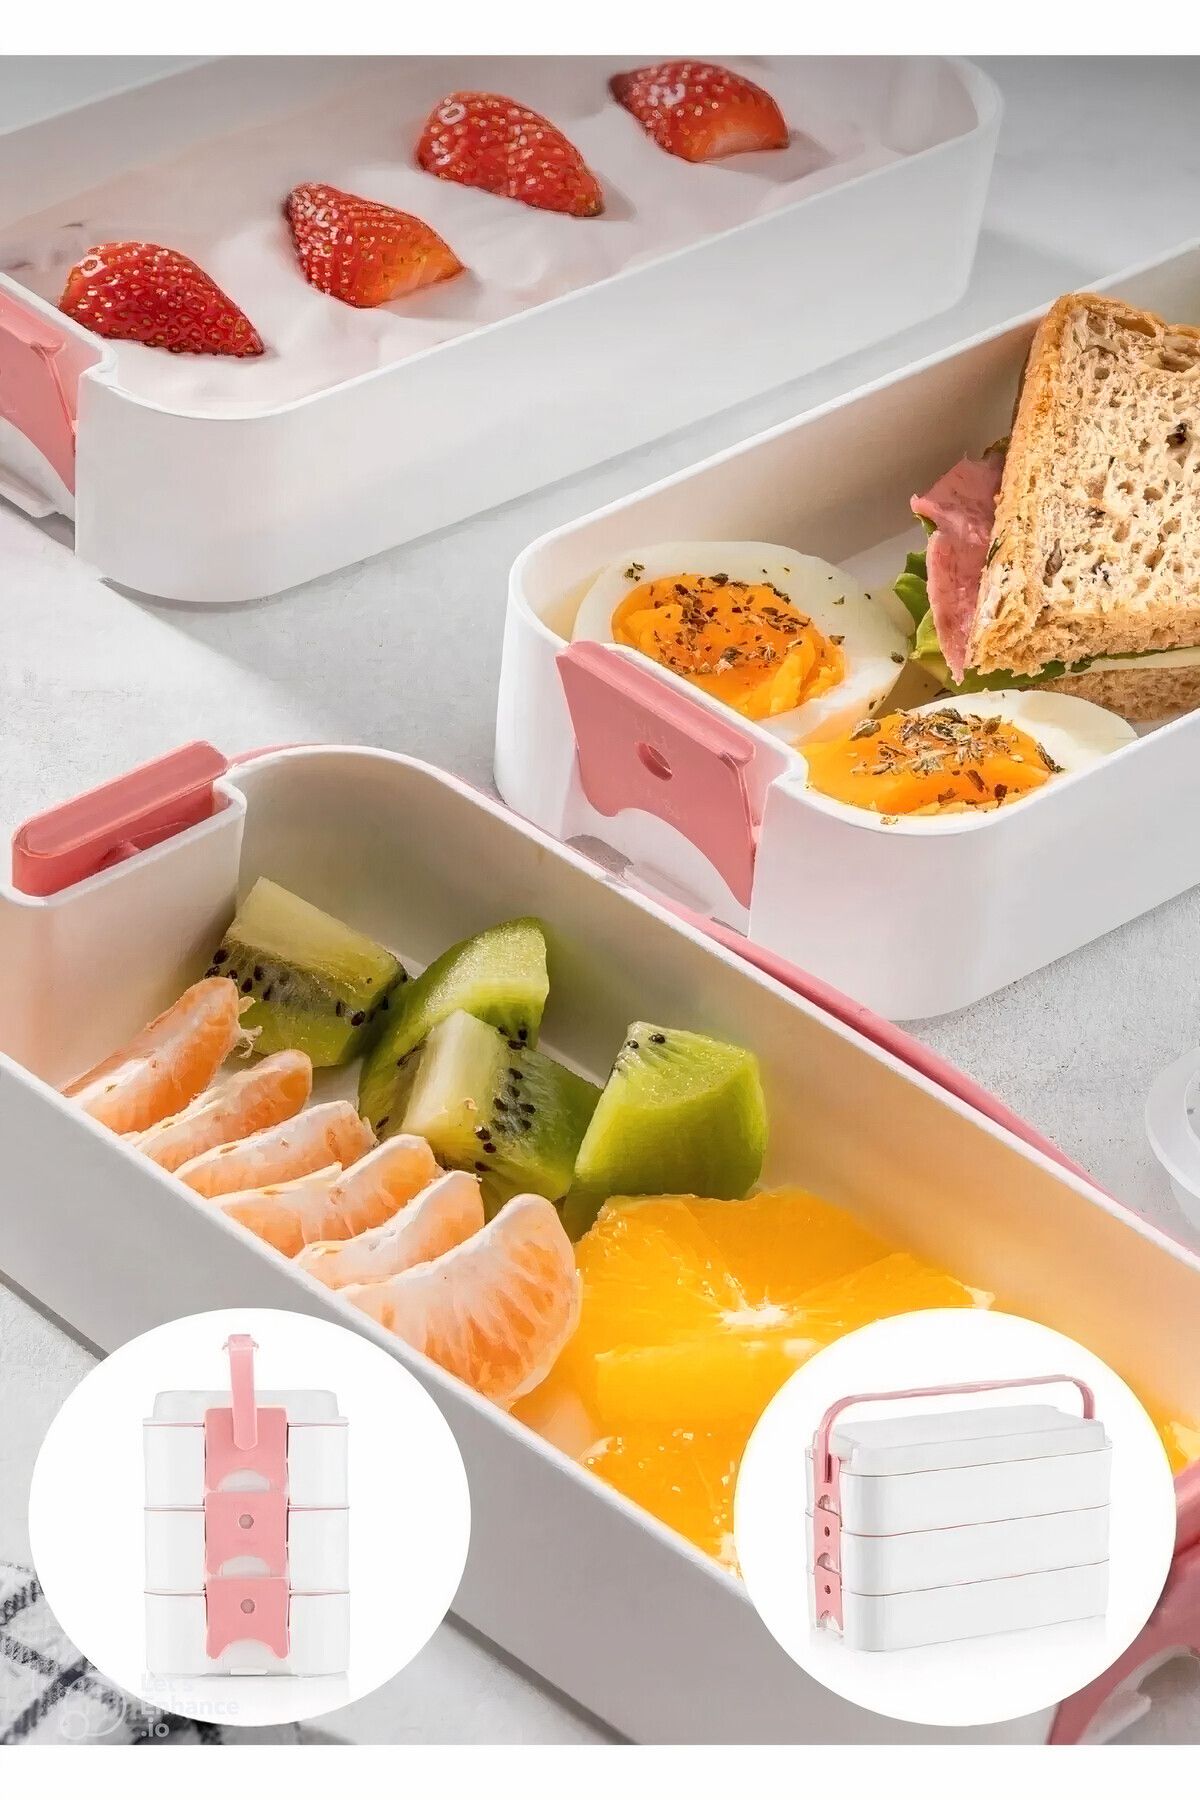 HomeDesigner 3 Katlı Taşınabilir Yemek Kabı – Lunch Box - Diyet Beslenme Saklama Kabı Çatal Kaşıklı KAT-KAT